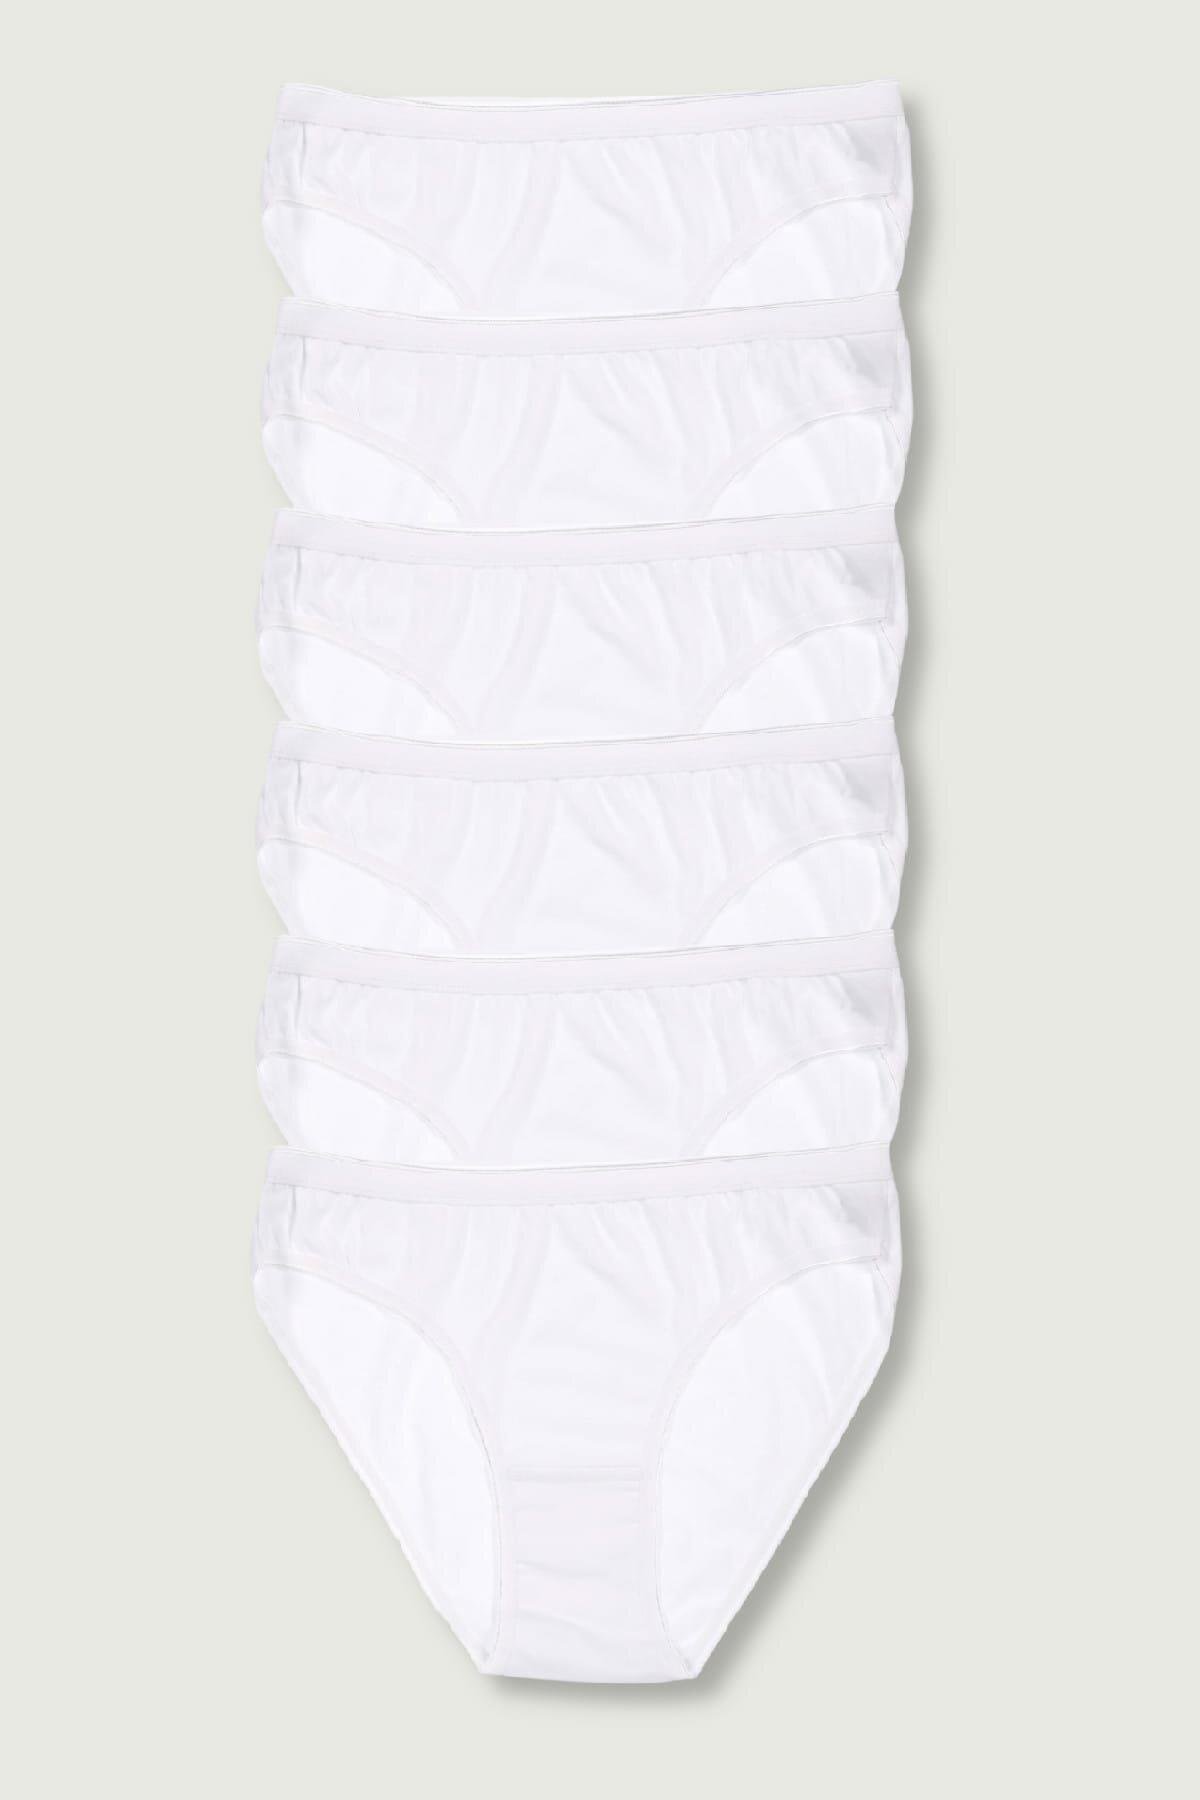 Tutku 6'lı Paket Kadın %100 Pamuk Bikini Külot | Çamaşırcımshop